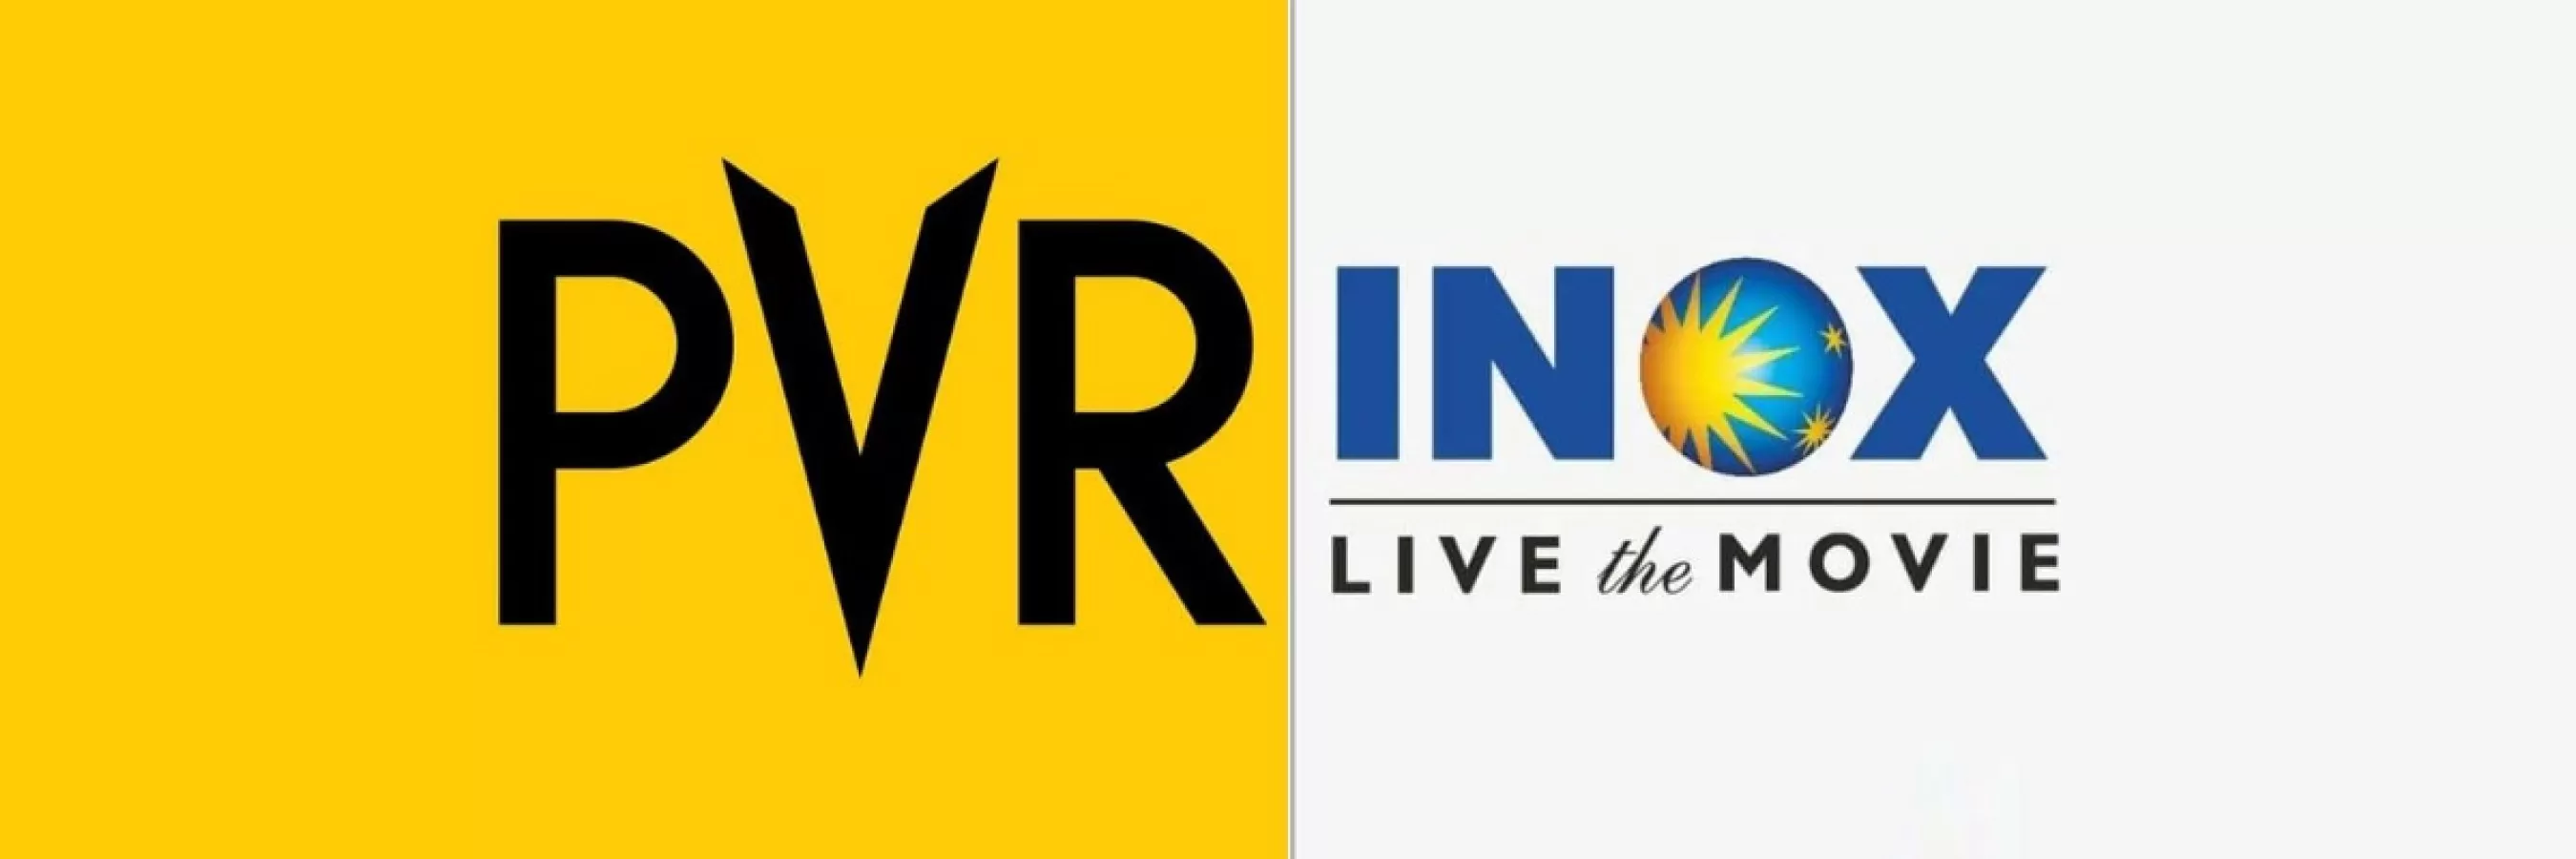 Cinema Media VR MALL Advertising in Surat